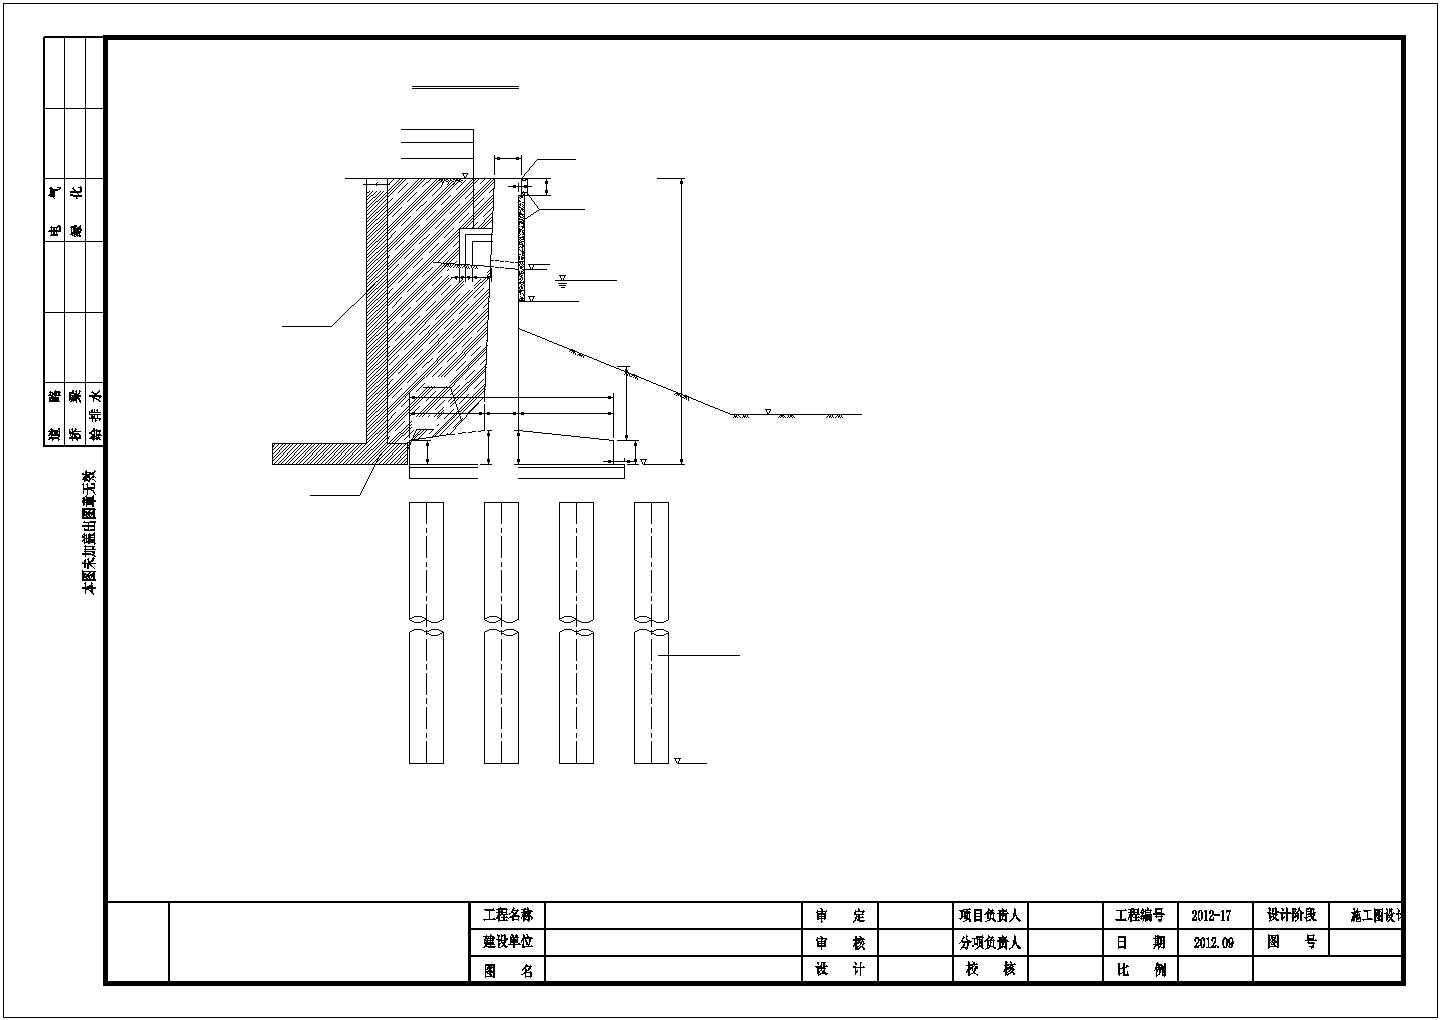 单跨20m先张法空心板桥与驳岸工程设计图